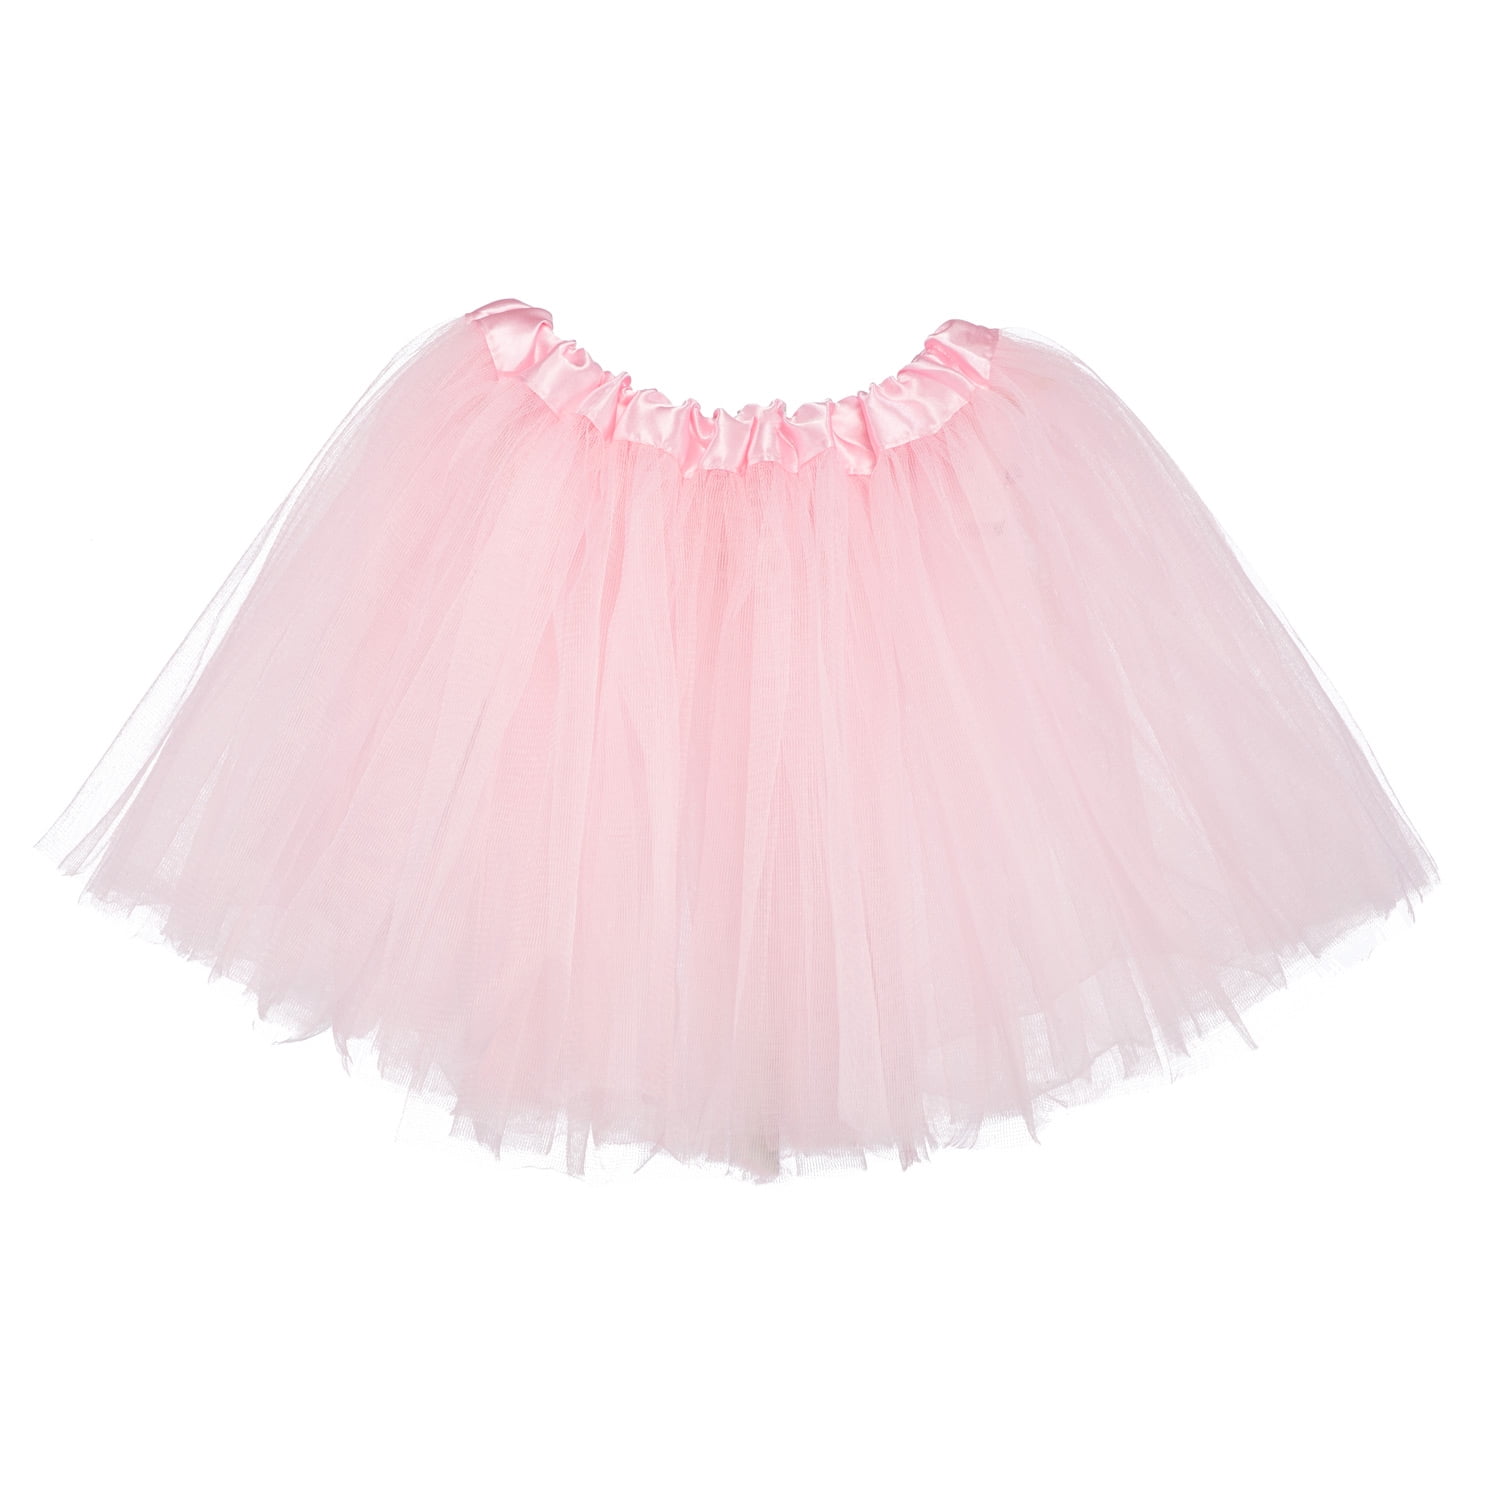 Fluffy Ballet Dress Up for Toddler Kids Children 3 Layers Tulle Tutus for Little Girls Girl Tutu Skirt 2T - 8T 